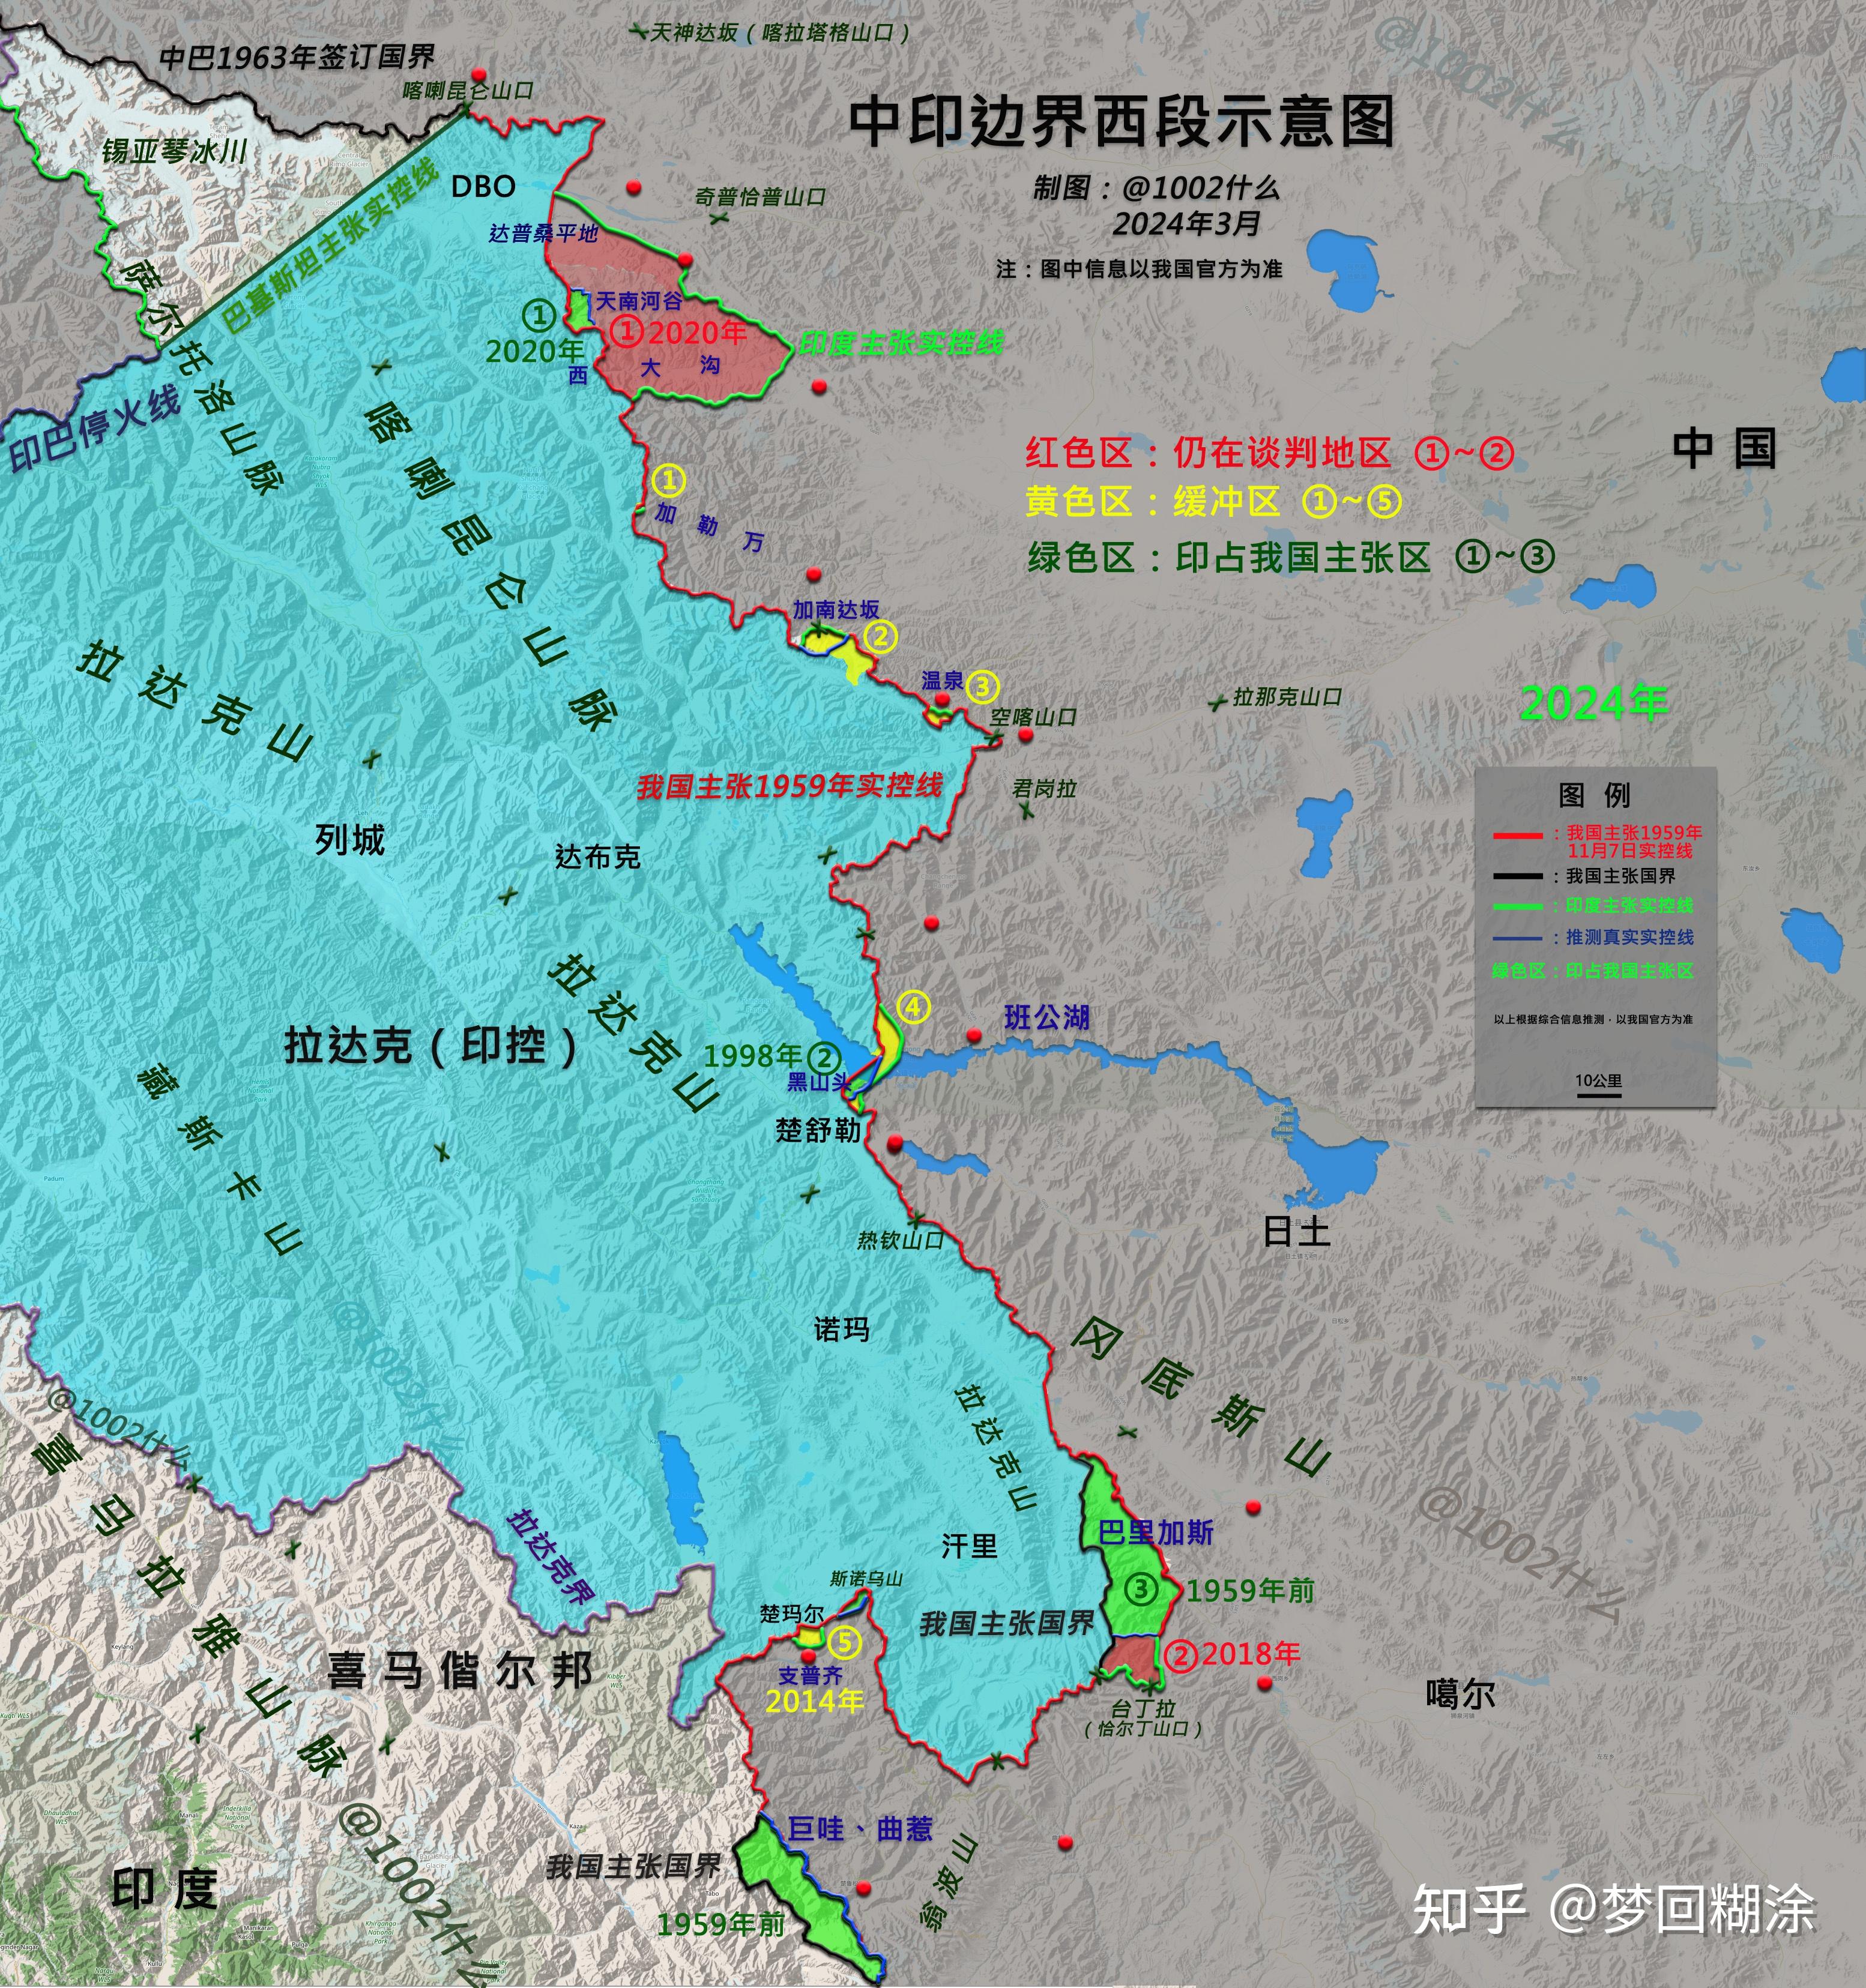 重磅高清地图解析1962对印反击战